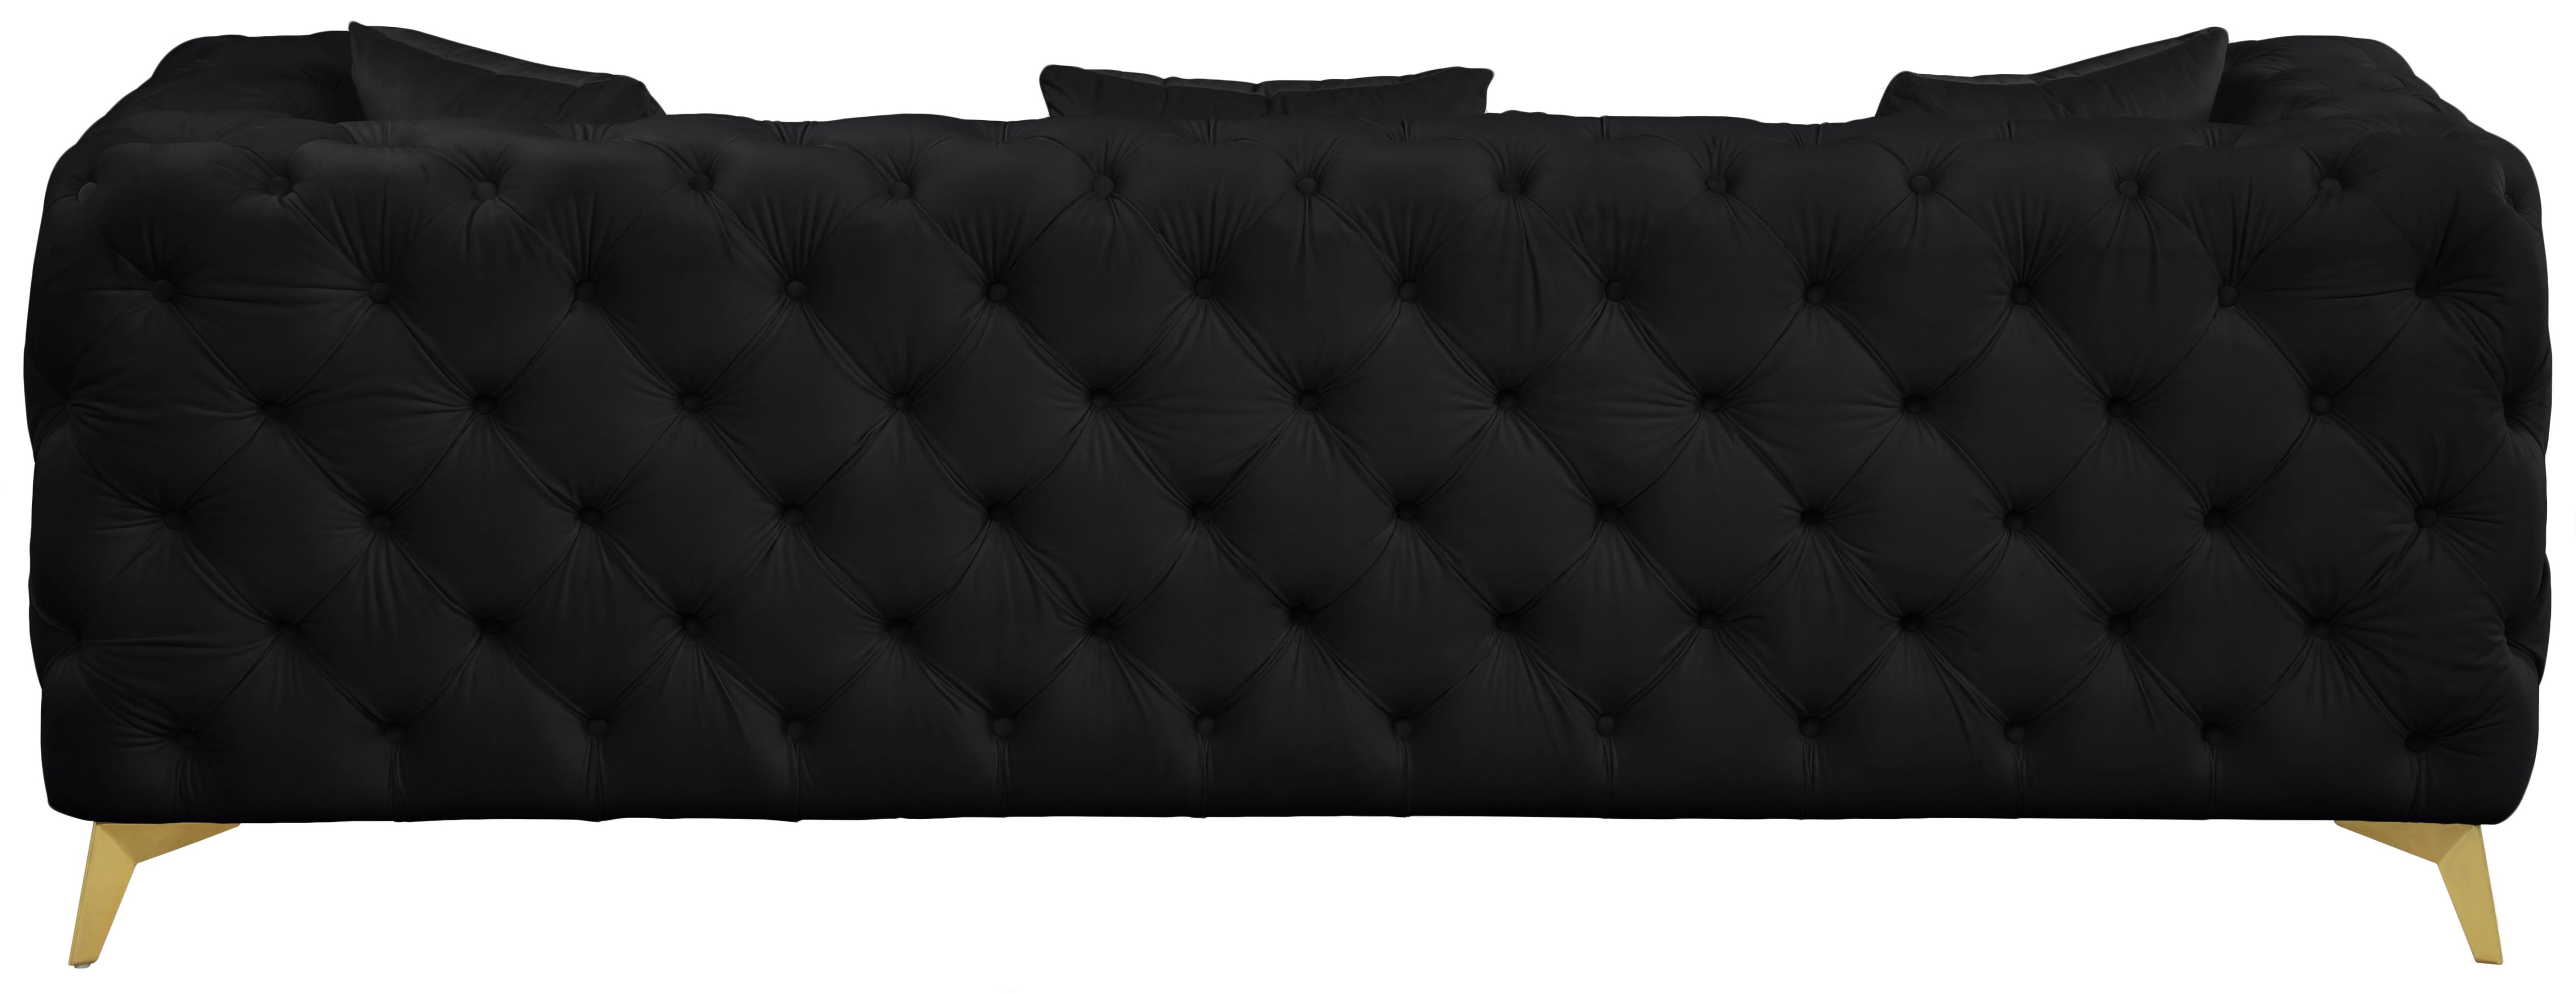 Kingdom Black Velvet Sofa